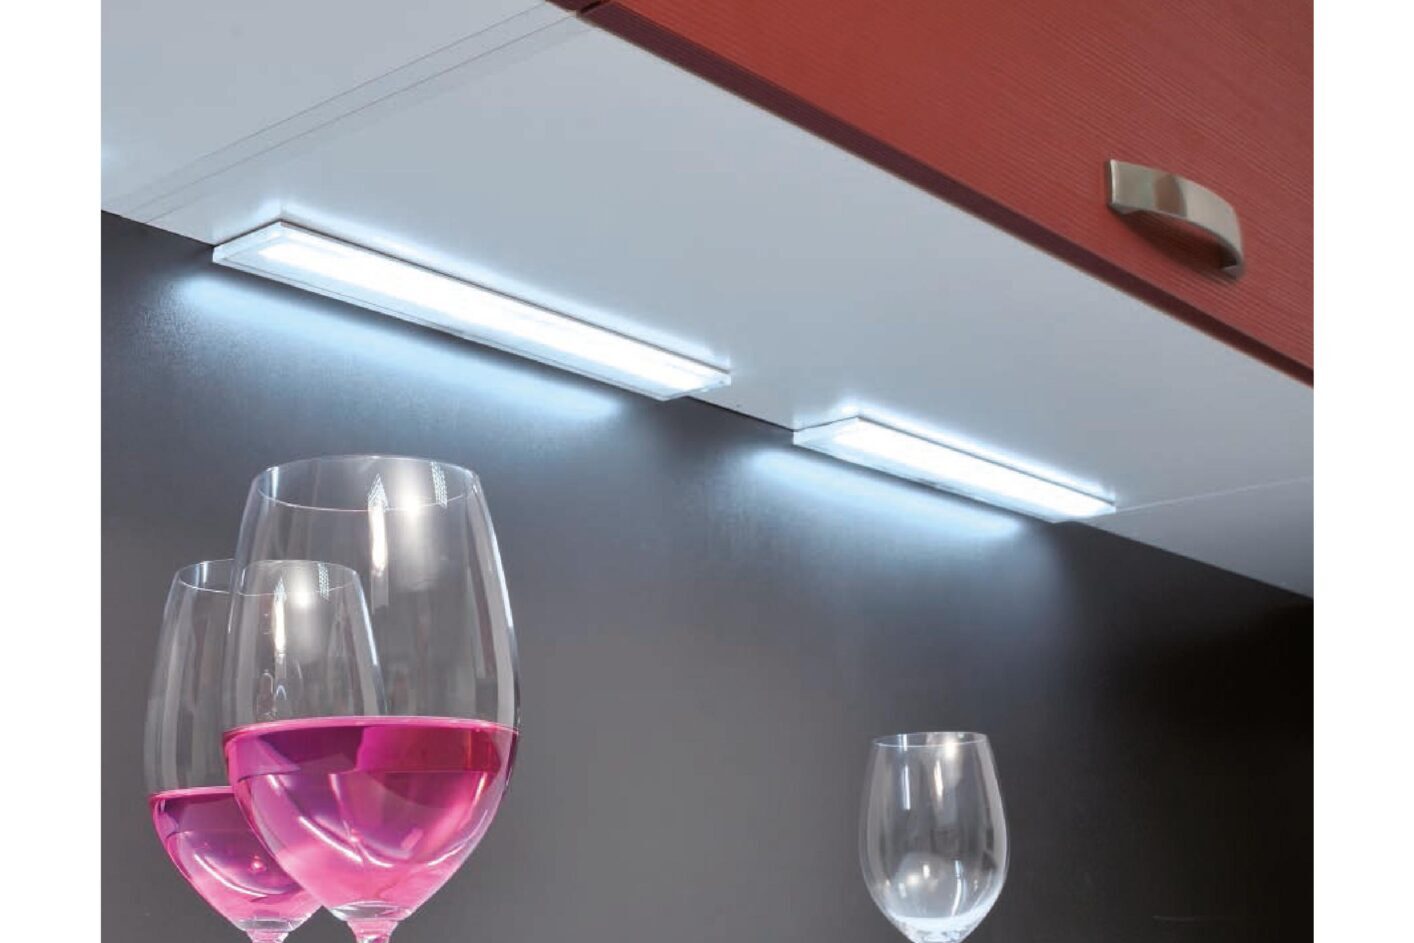 Sistema de luz para muebles de cocina de focos independientes